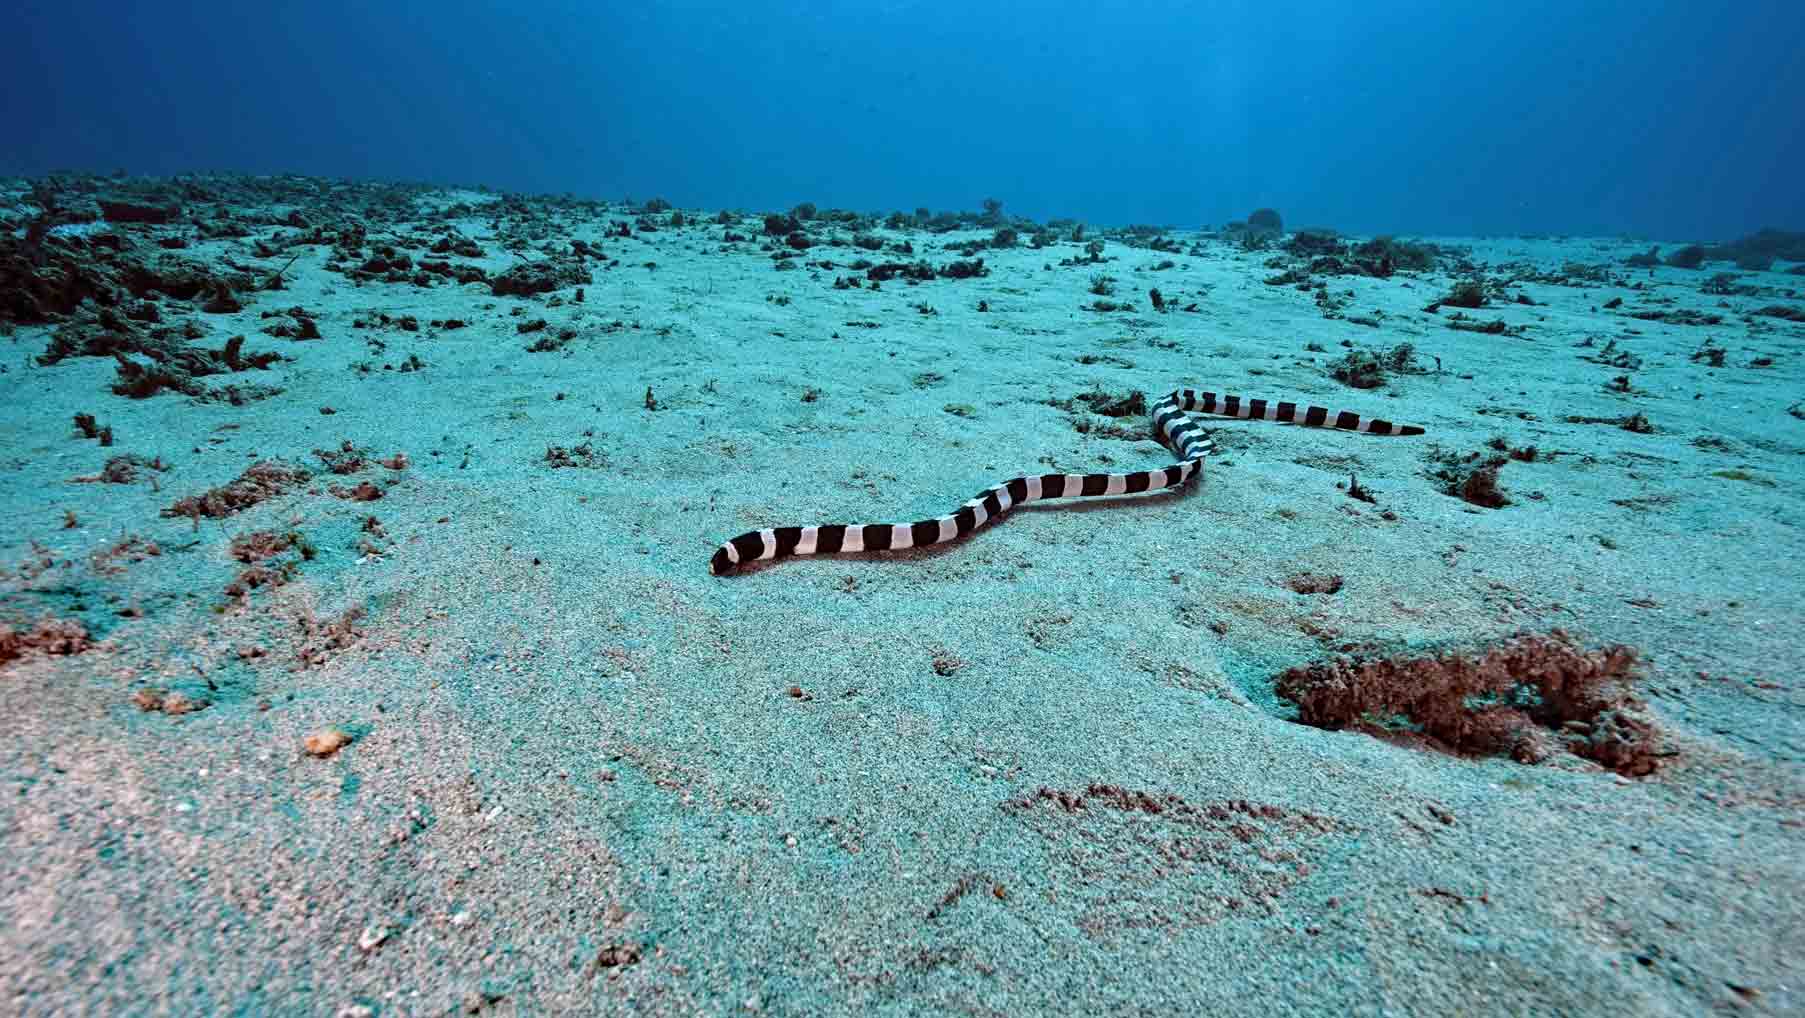 Serpente di mare a Padang Bai su un fondale sabbioso.